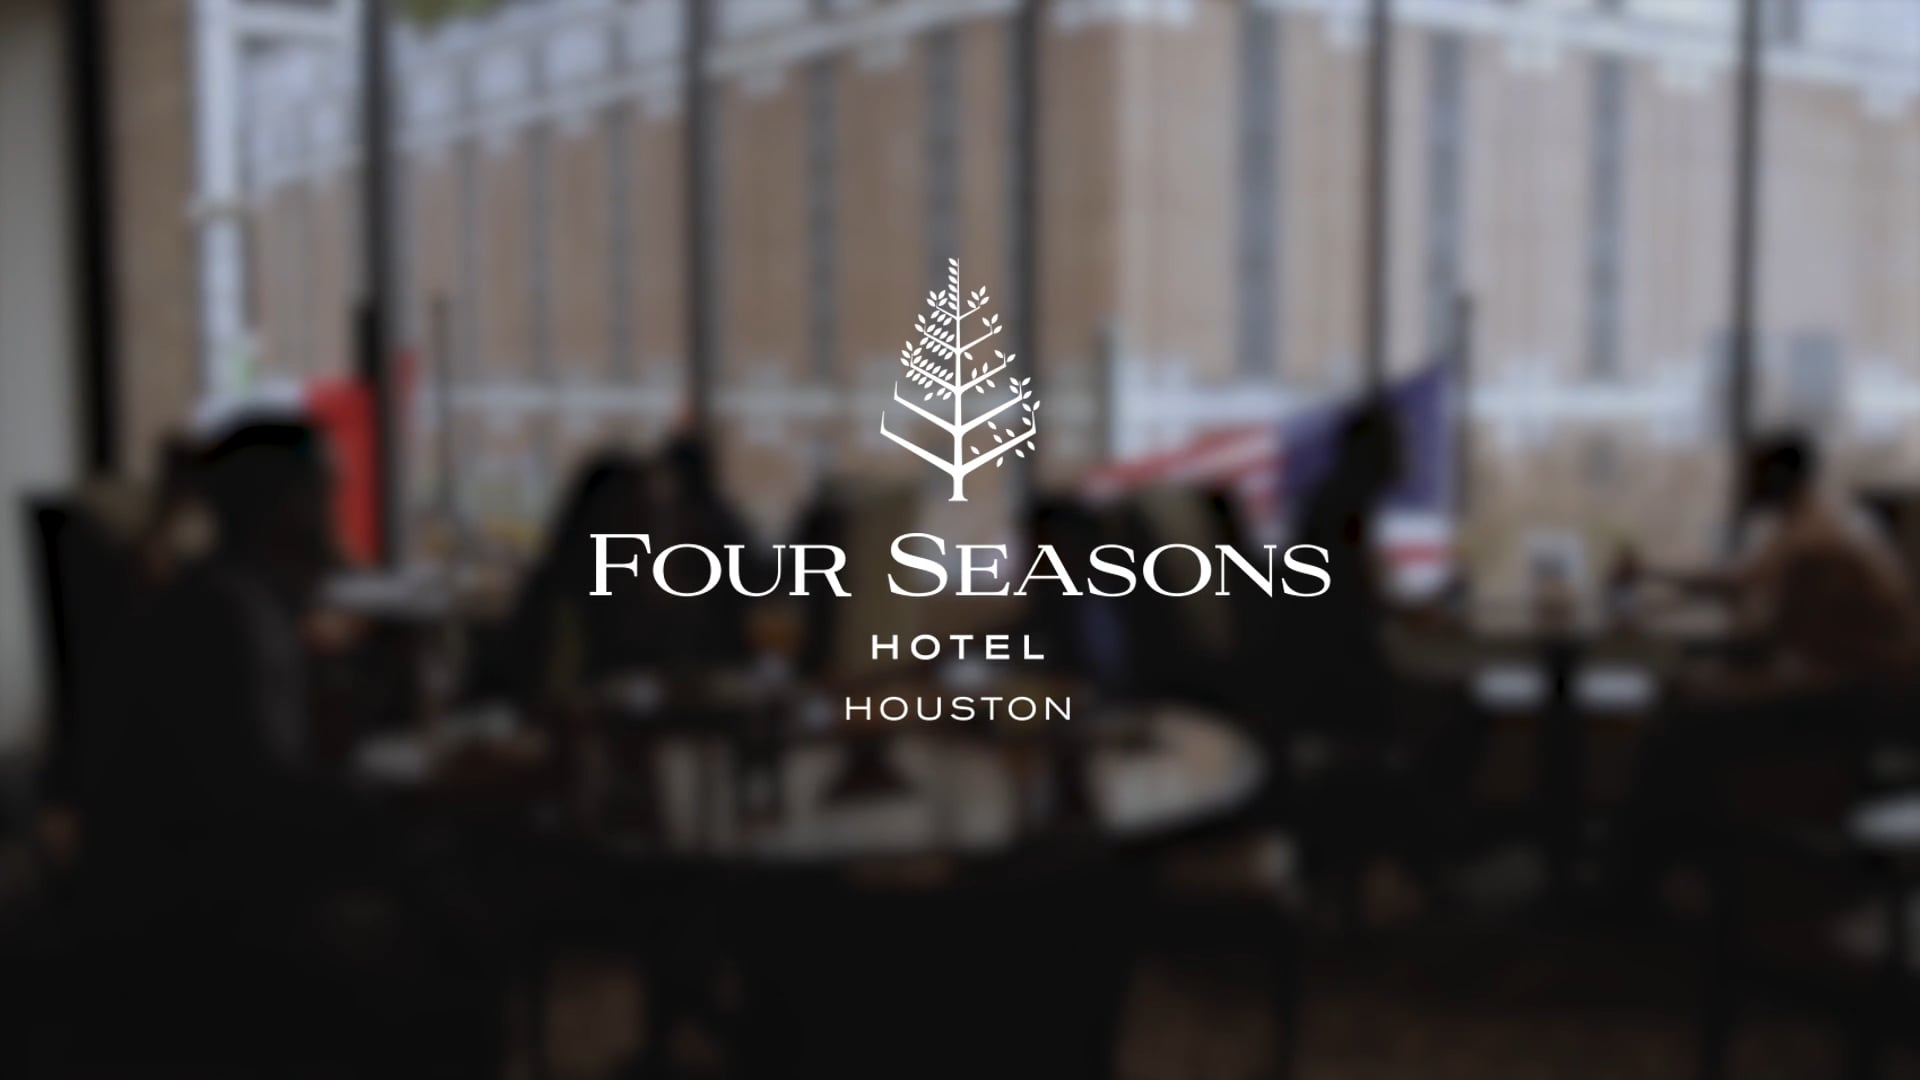 Four Seasons Hotel // Houston, Texas